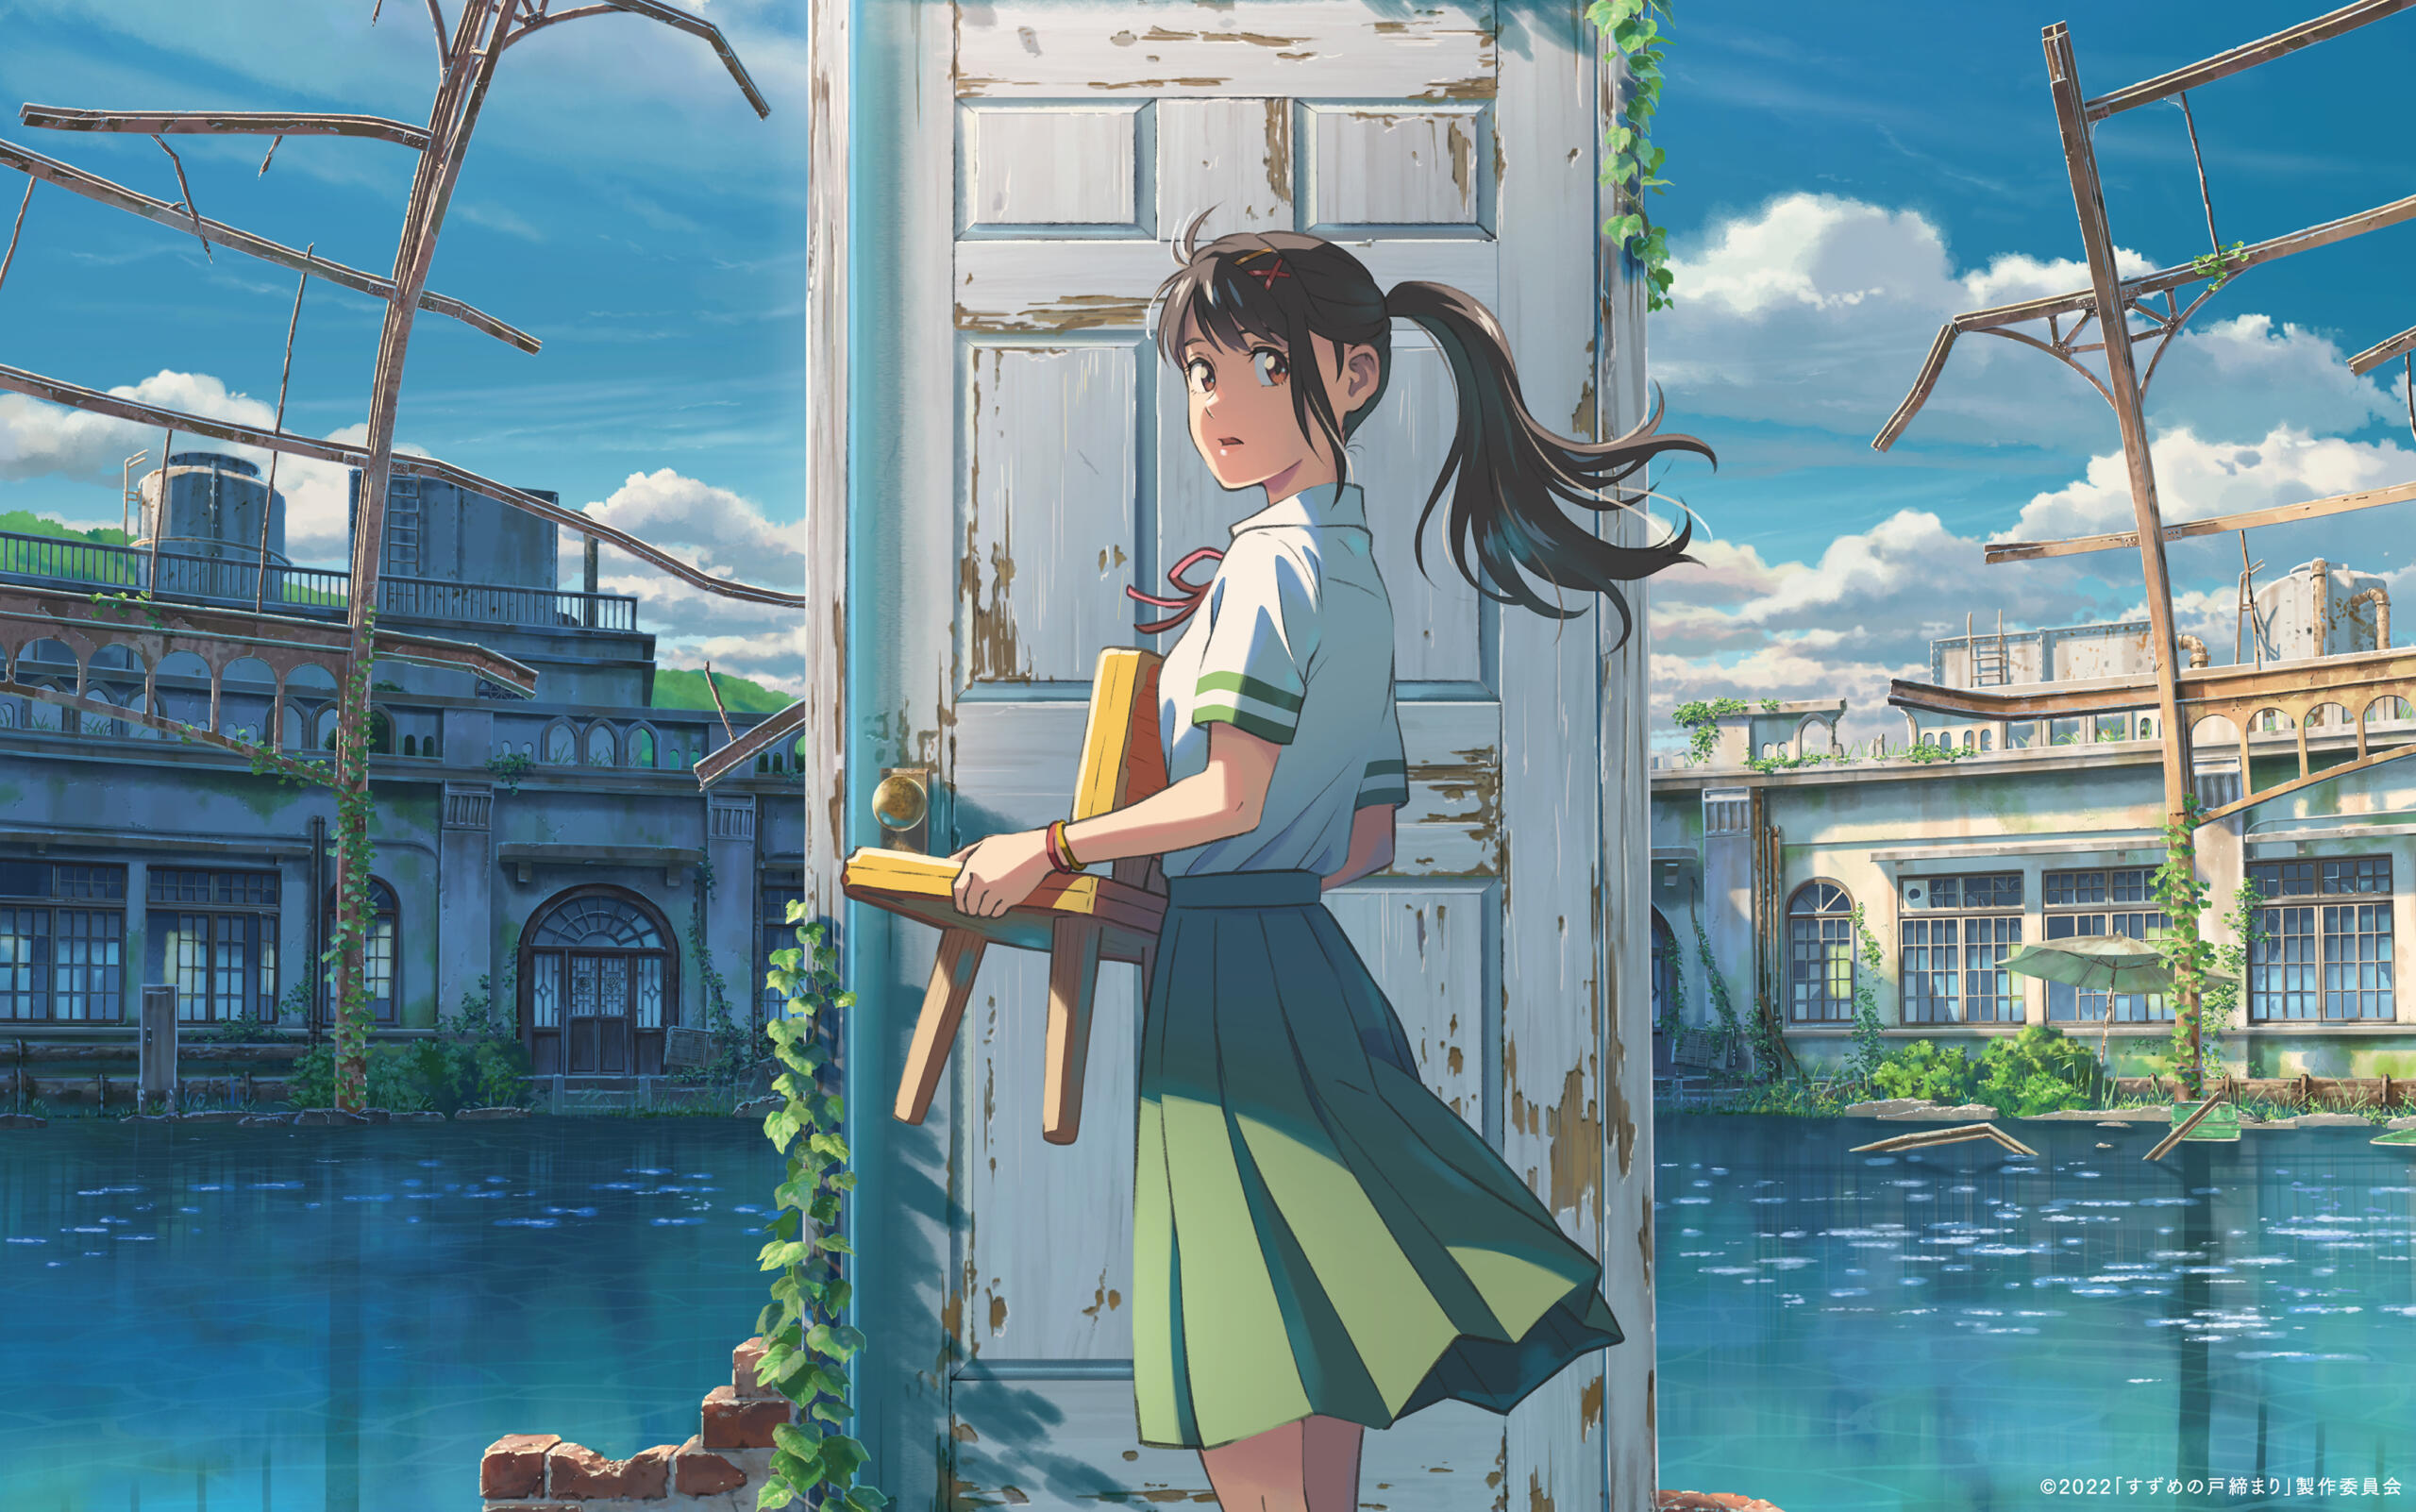 Eine Zeichnung im Anime-Stil zeigt ein Mädchen, das mit einem Hocker in der Hand vor einer Tür steht, die in einer löchrigen Hauswand eingefasst ist.